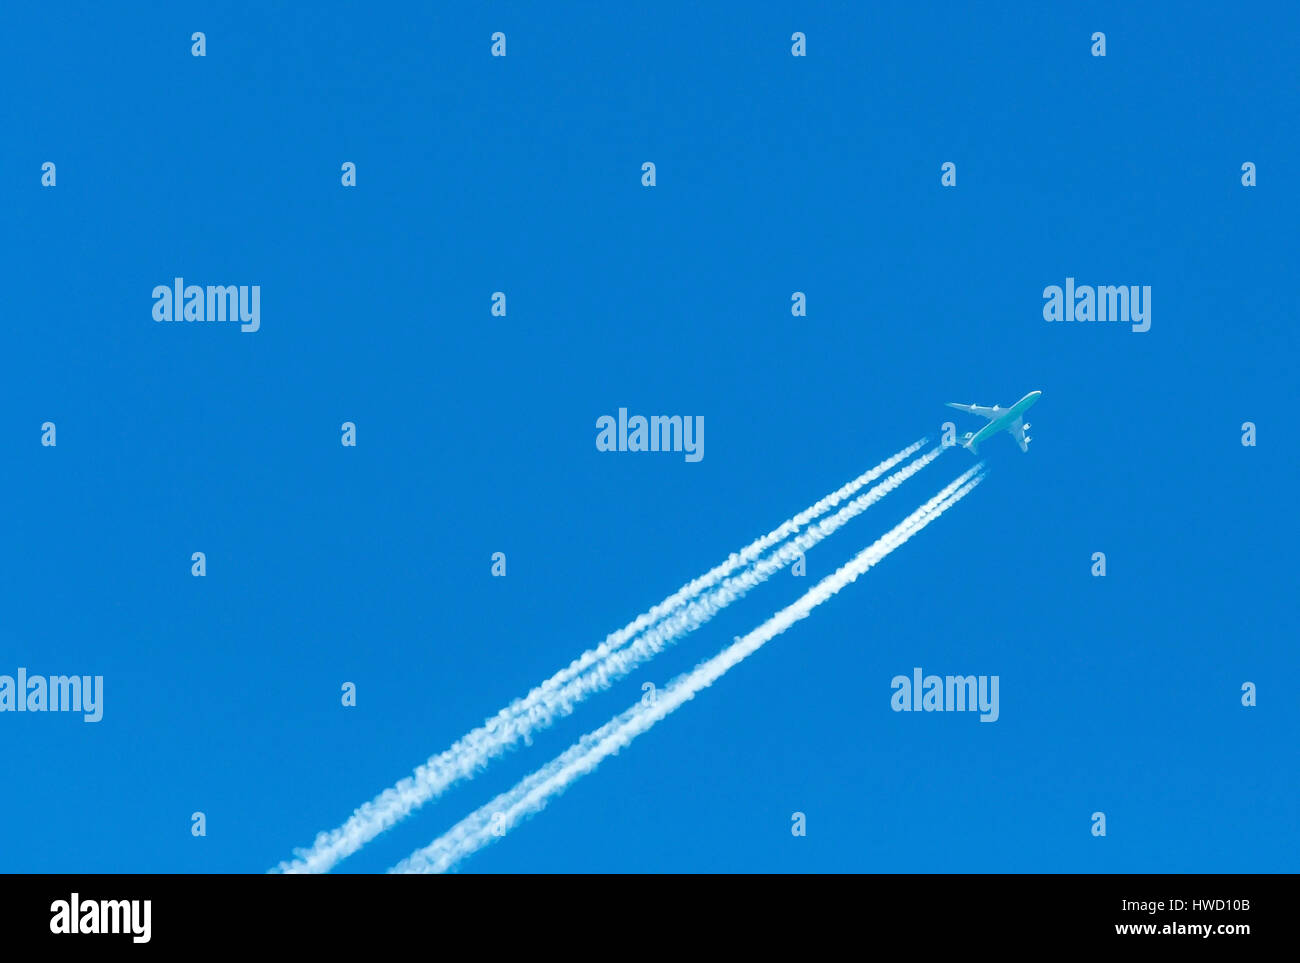 Ein Flugzeug mit Kondensation Trail in den blauen Himmel, Ein Flugzeug Mit Kondensstreifen am Blauen Himmel Stockfoto